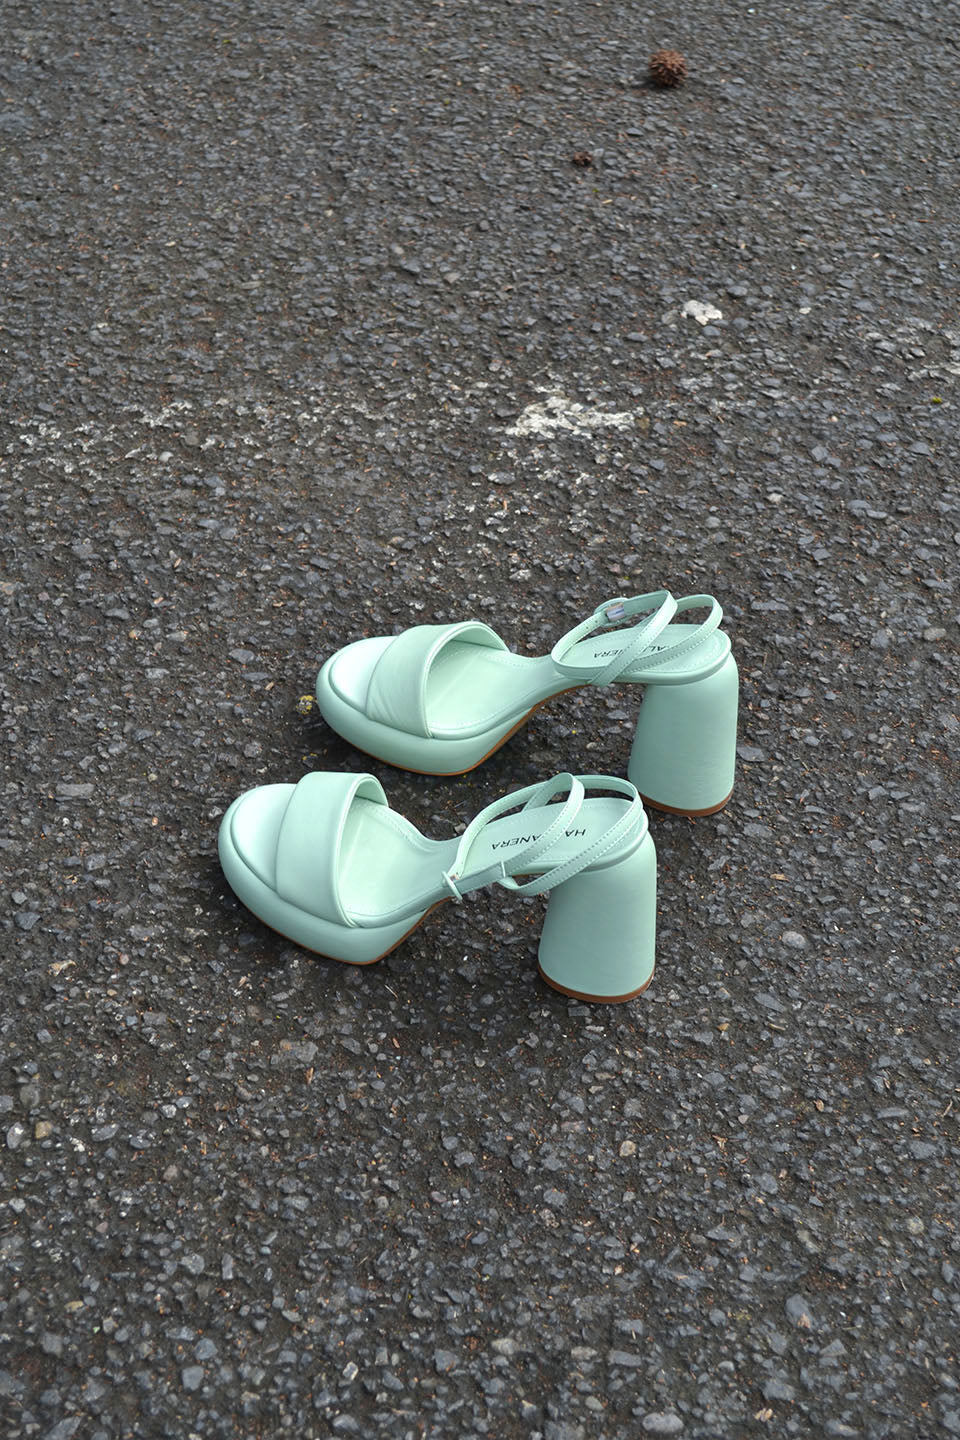 Mint Platform Sandals